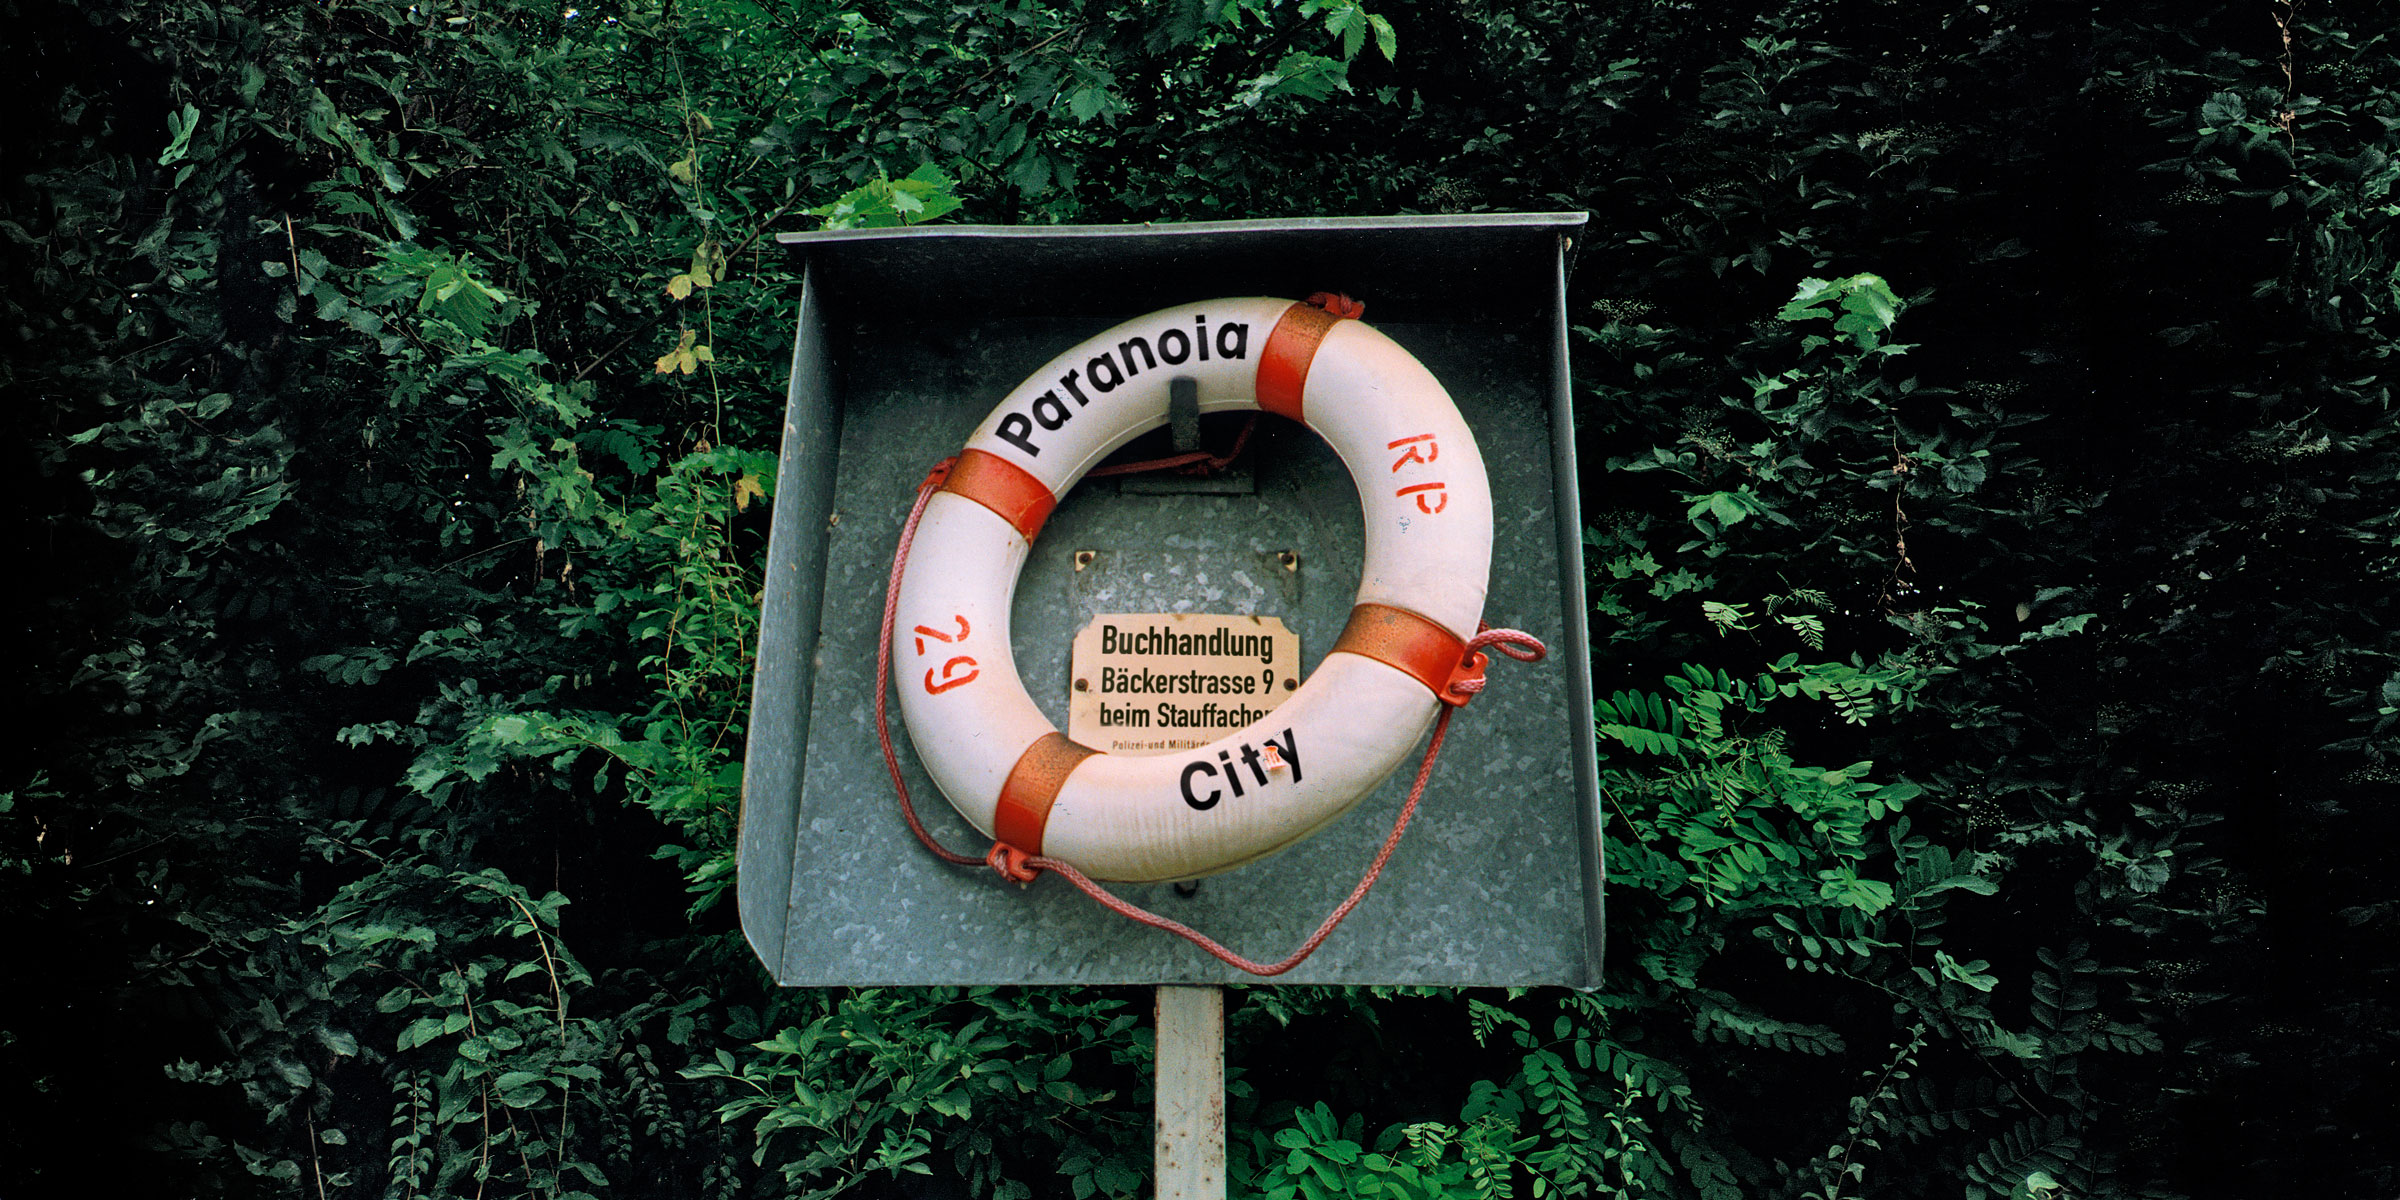 CICD für die Paranoia City Buchhandlung, 1995 — 1997